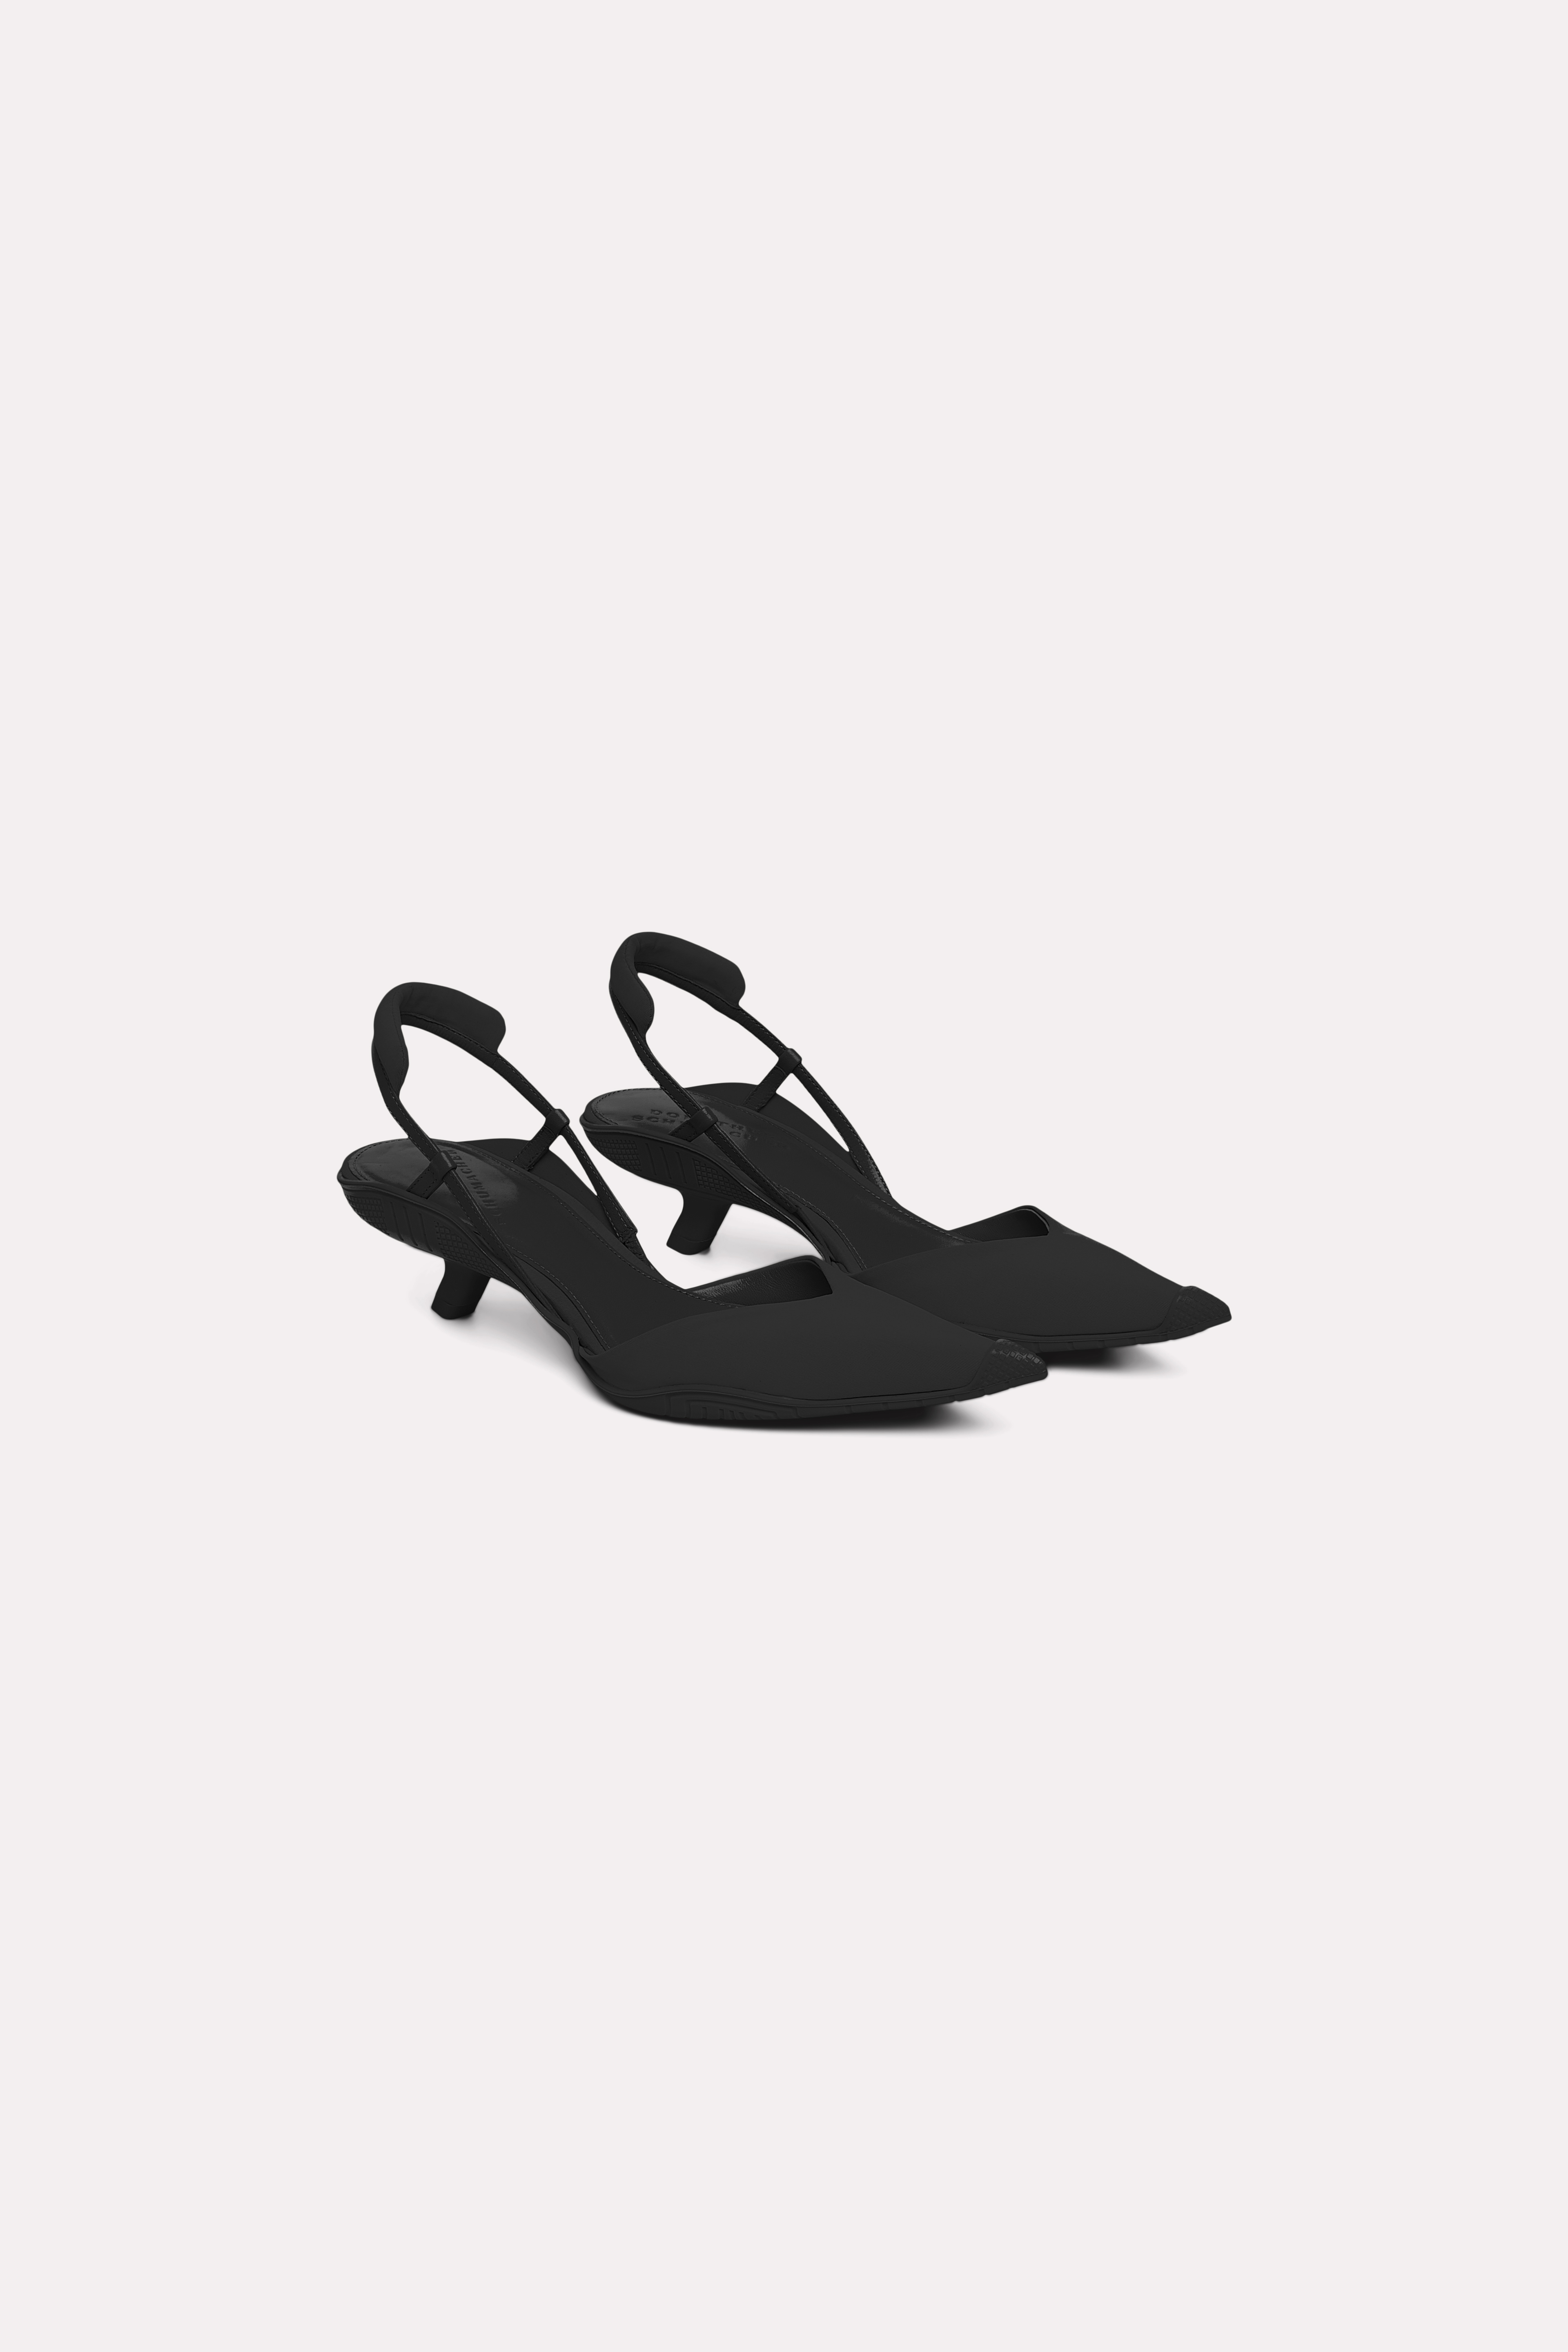 Dorothee Schumacher Kitten Heel Slingbacks In Black